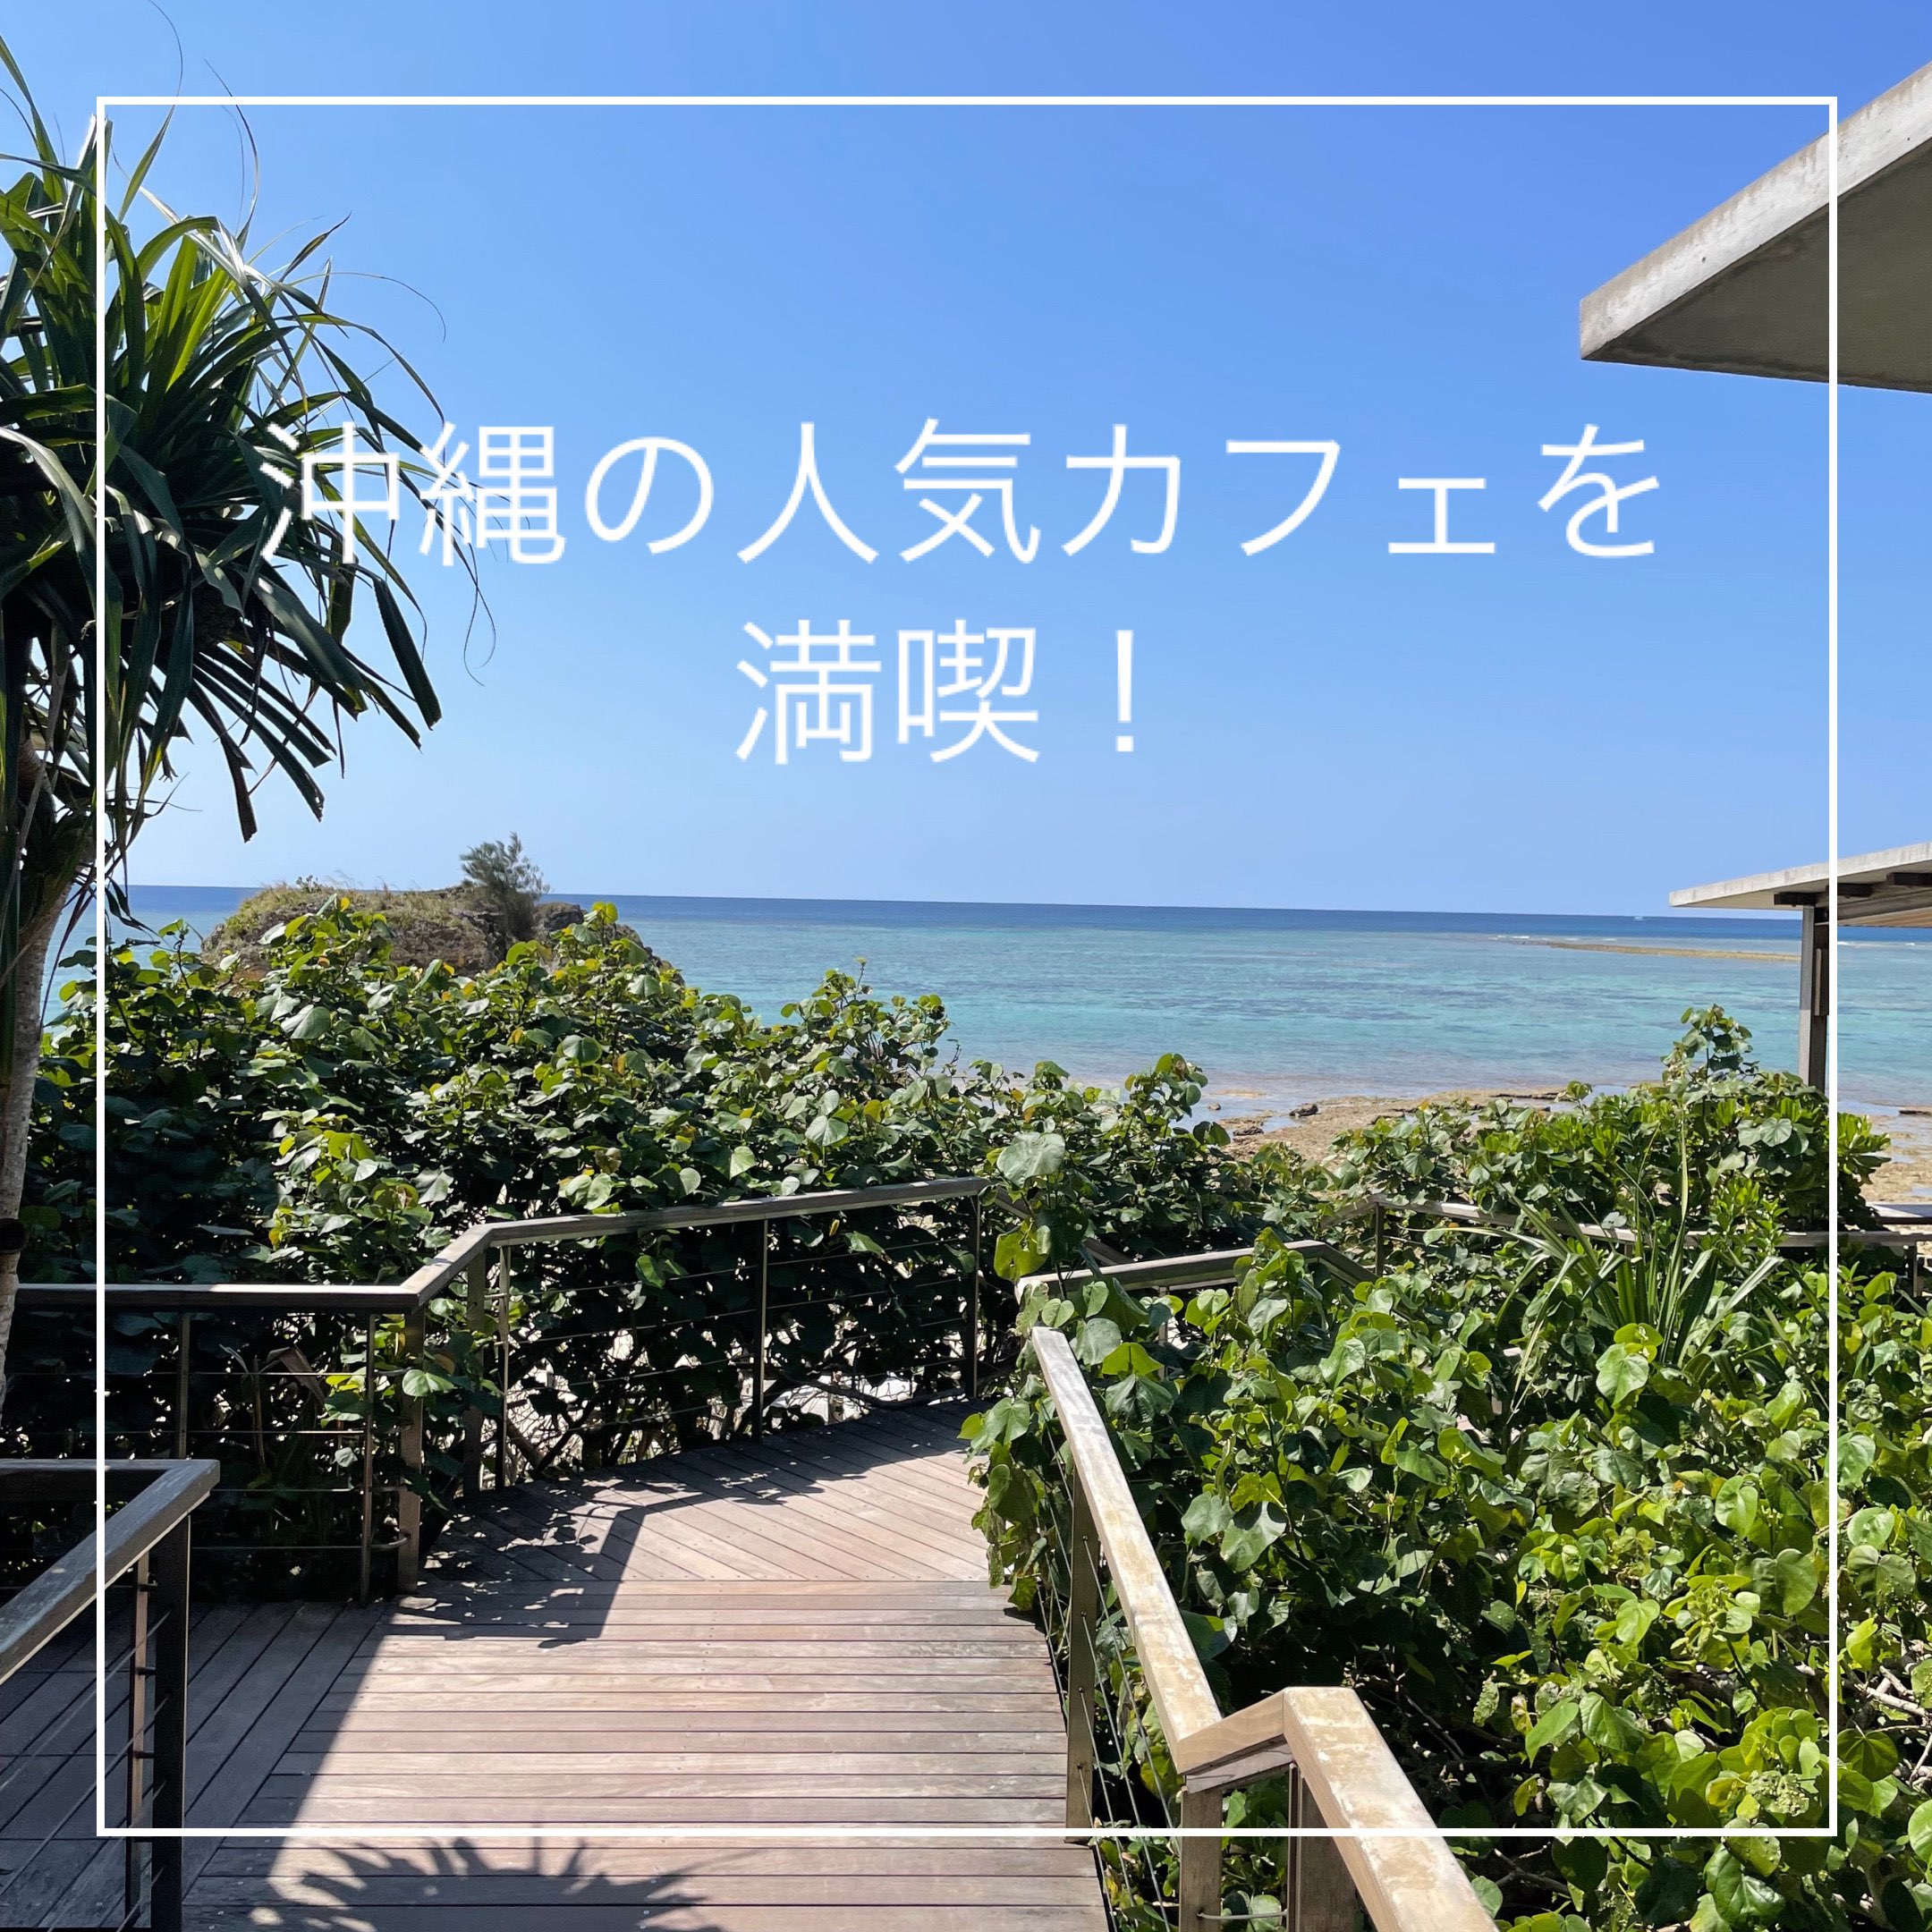 【冲绳县】在人气海咖啡厅悠闲度过